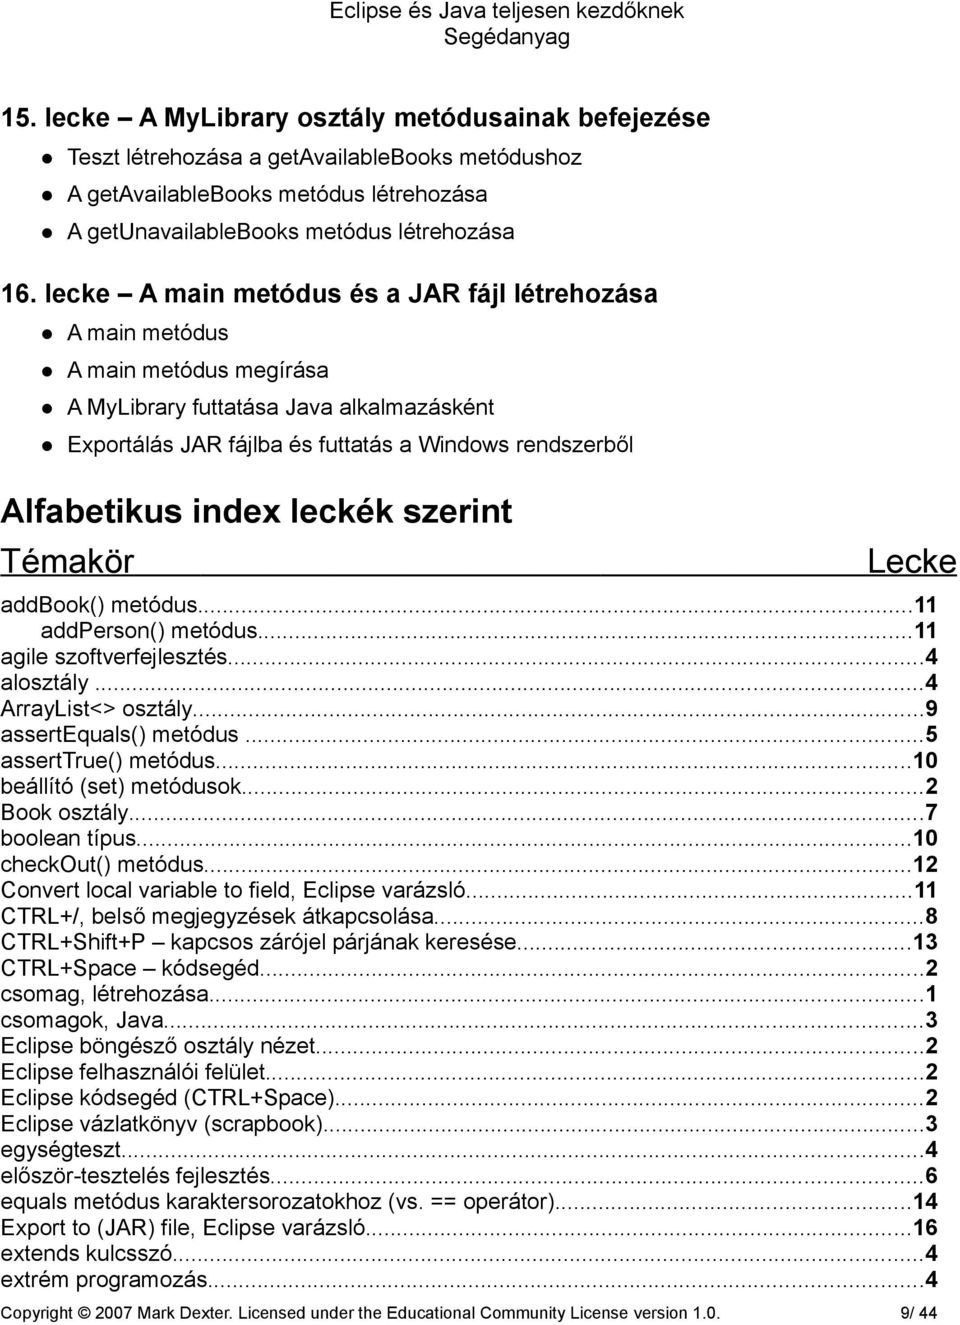 index leckék szerint Témakör Lecke addbook() metódus...11 addperson() metódus...11 agile szoftverfejlesztés...4 alosztály...4 ArrayList<> osztály...9 assertequals() metódus...5 asserttrue() metódus.